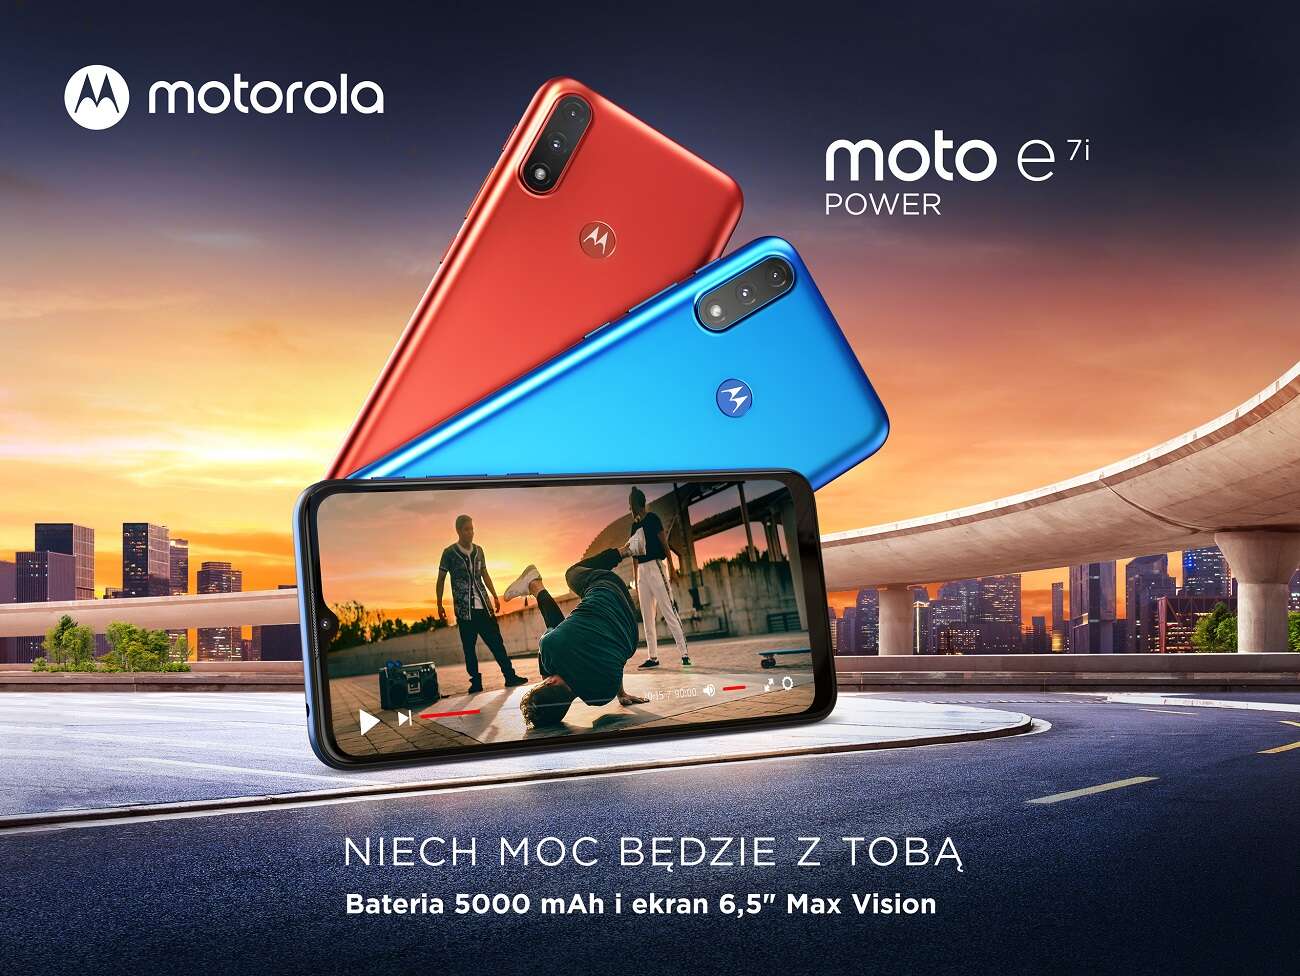 Motorola moto e7i power dostępna w sprzedaży w Polsce!